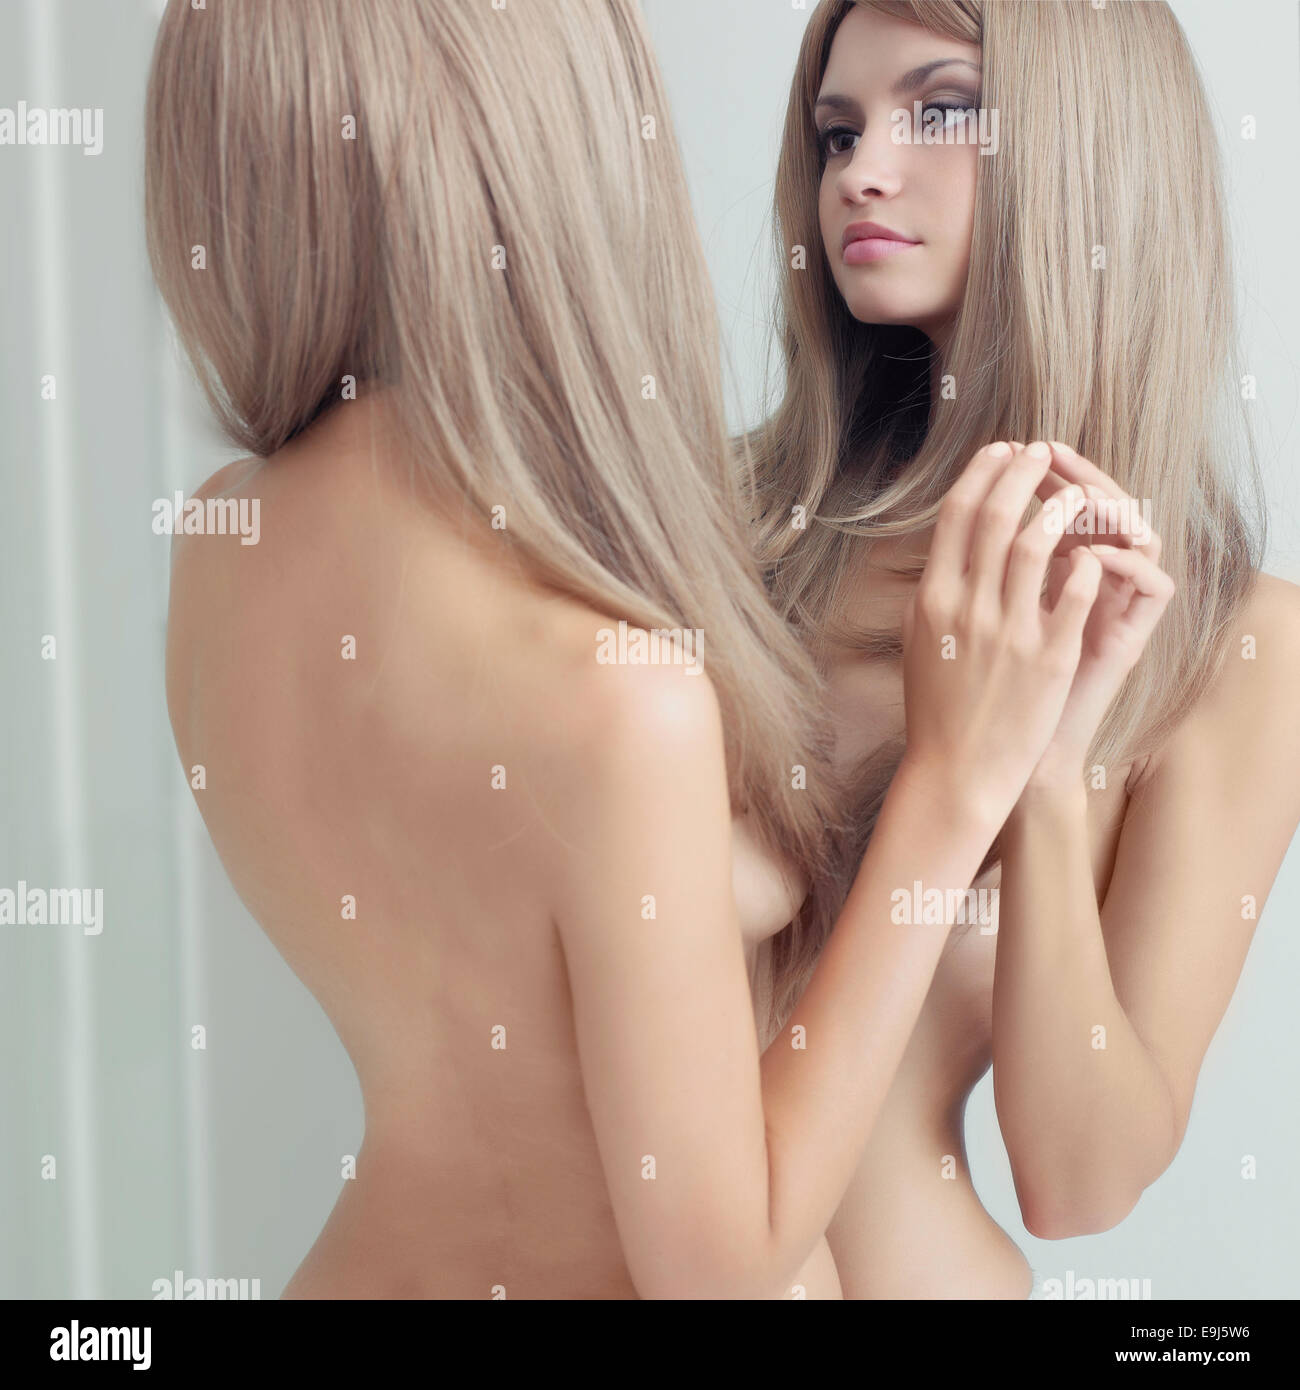 Belle fille nue devant le miroir Photo Stock - Alamy